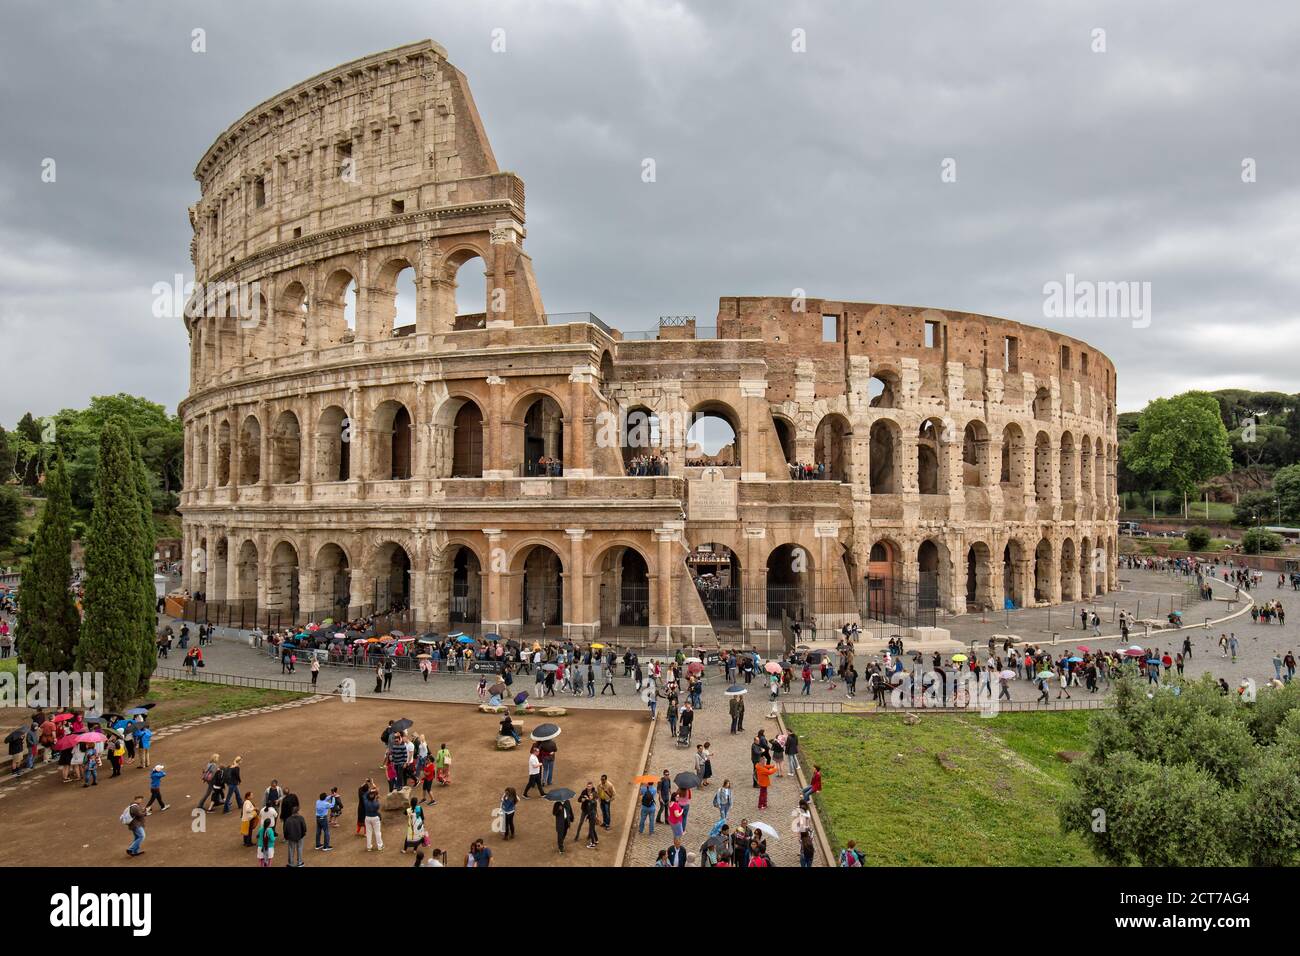 Rom, Italien - 15. Mai 2016: Das Kolosseum ist eine wichtige Touristenattraktion in Rom. Touristen Besuch des Kolosseums in Rom -Schwarz-Weiß-Foto Stockfoto